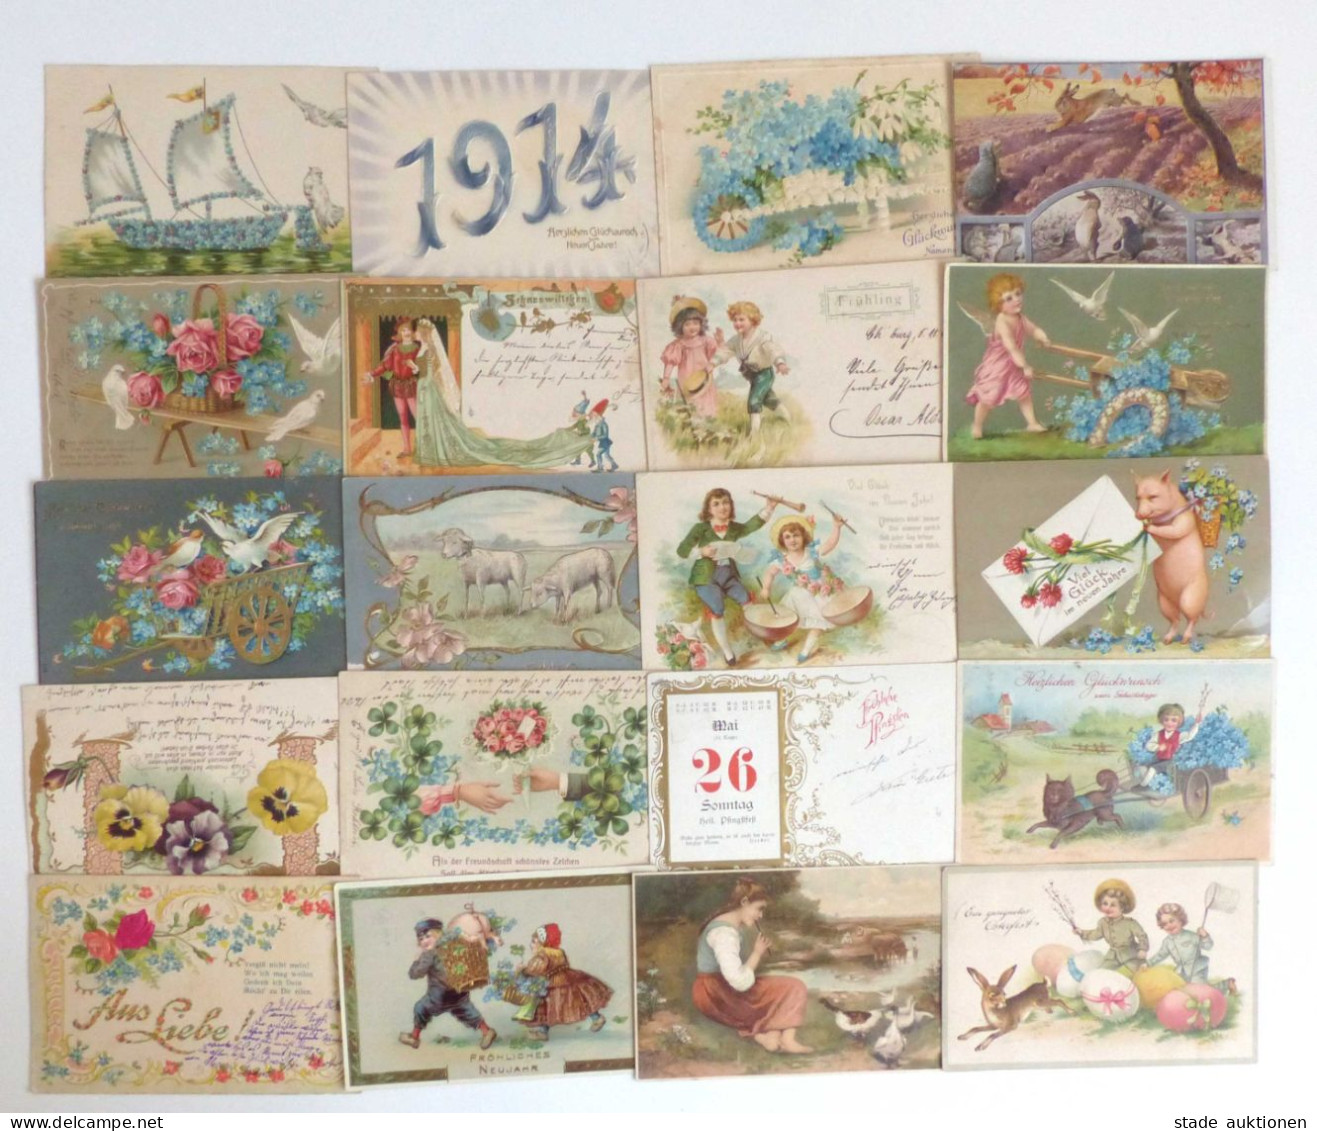 Glückwunsch Partie von circa 1150 Ansichtskarten, oft geprägt I-II